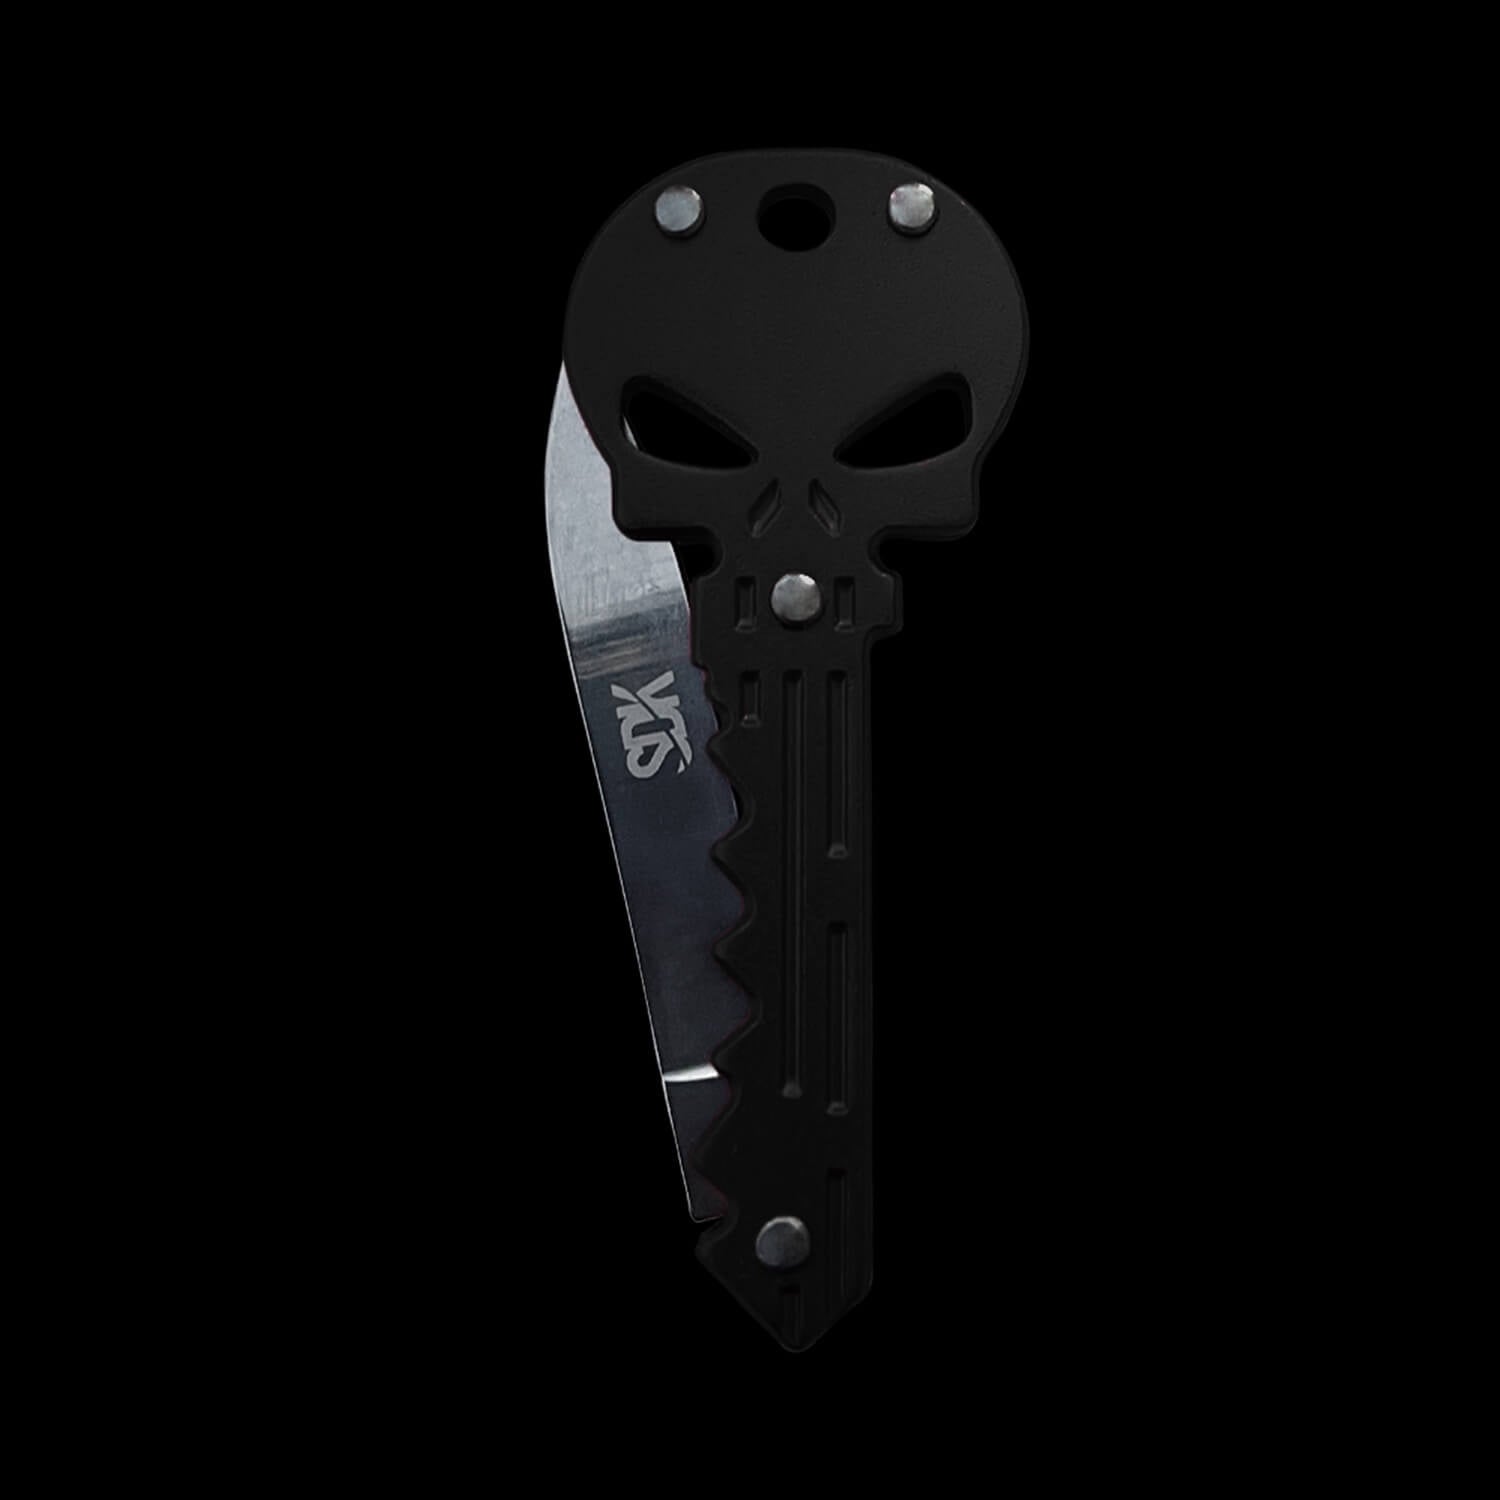 SDK Skull Knife Black (stainless steel skull-shaped flip knife)